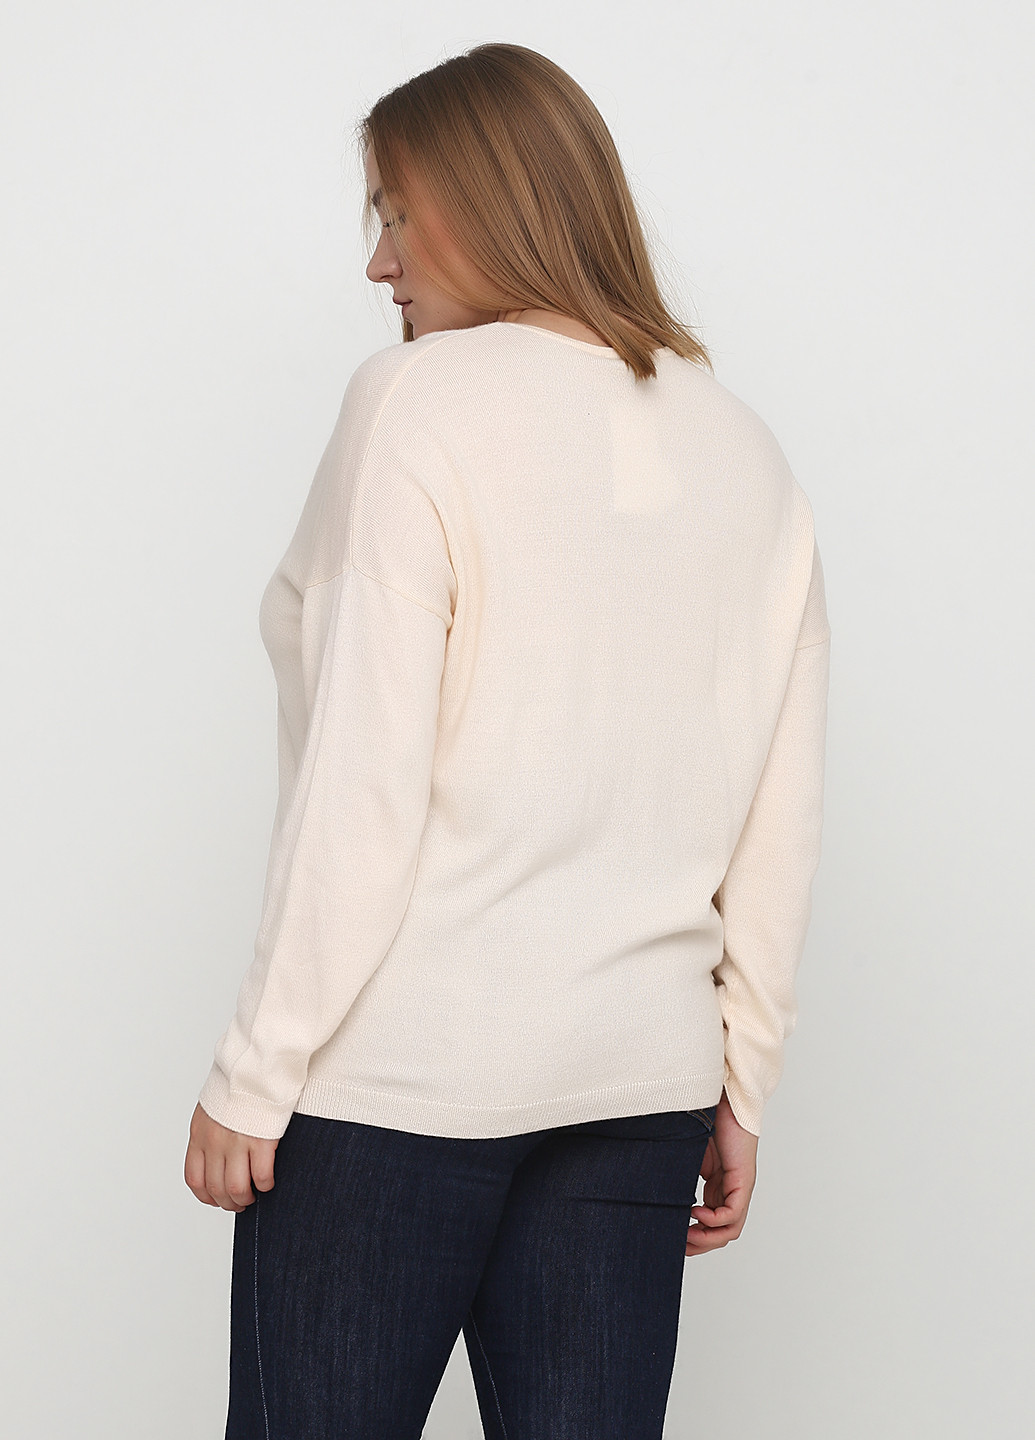 Персиковый демисезонный пуловер пуловер Maison 123